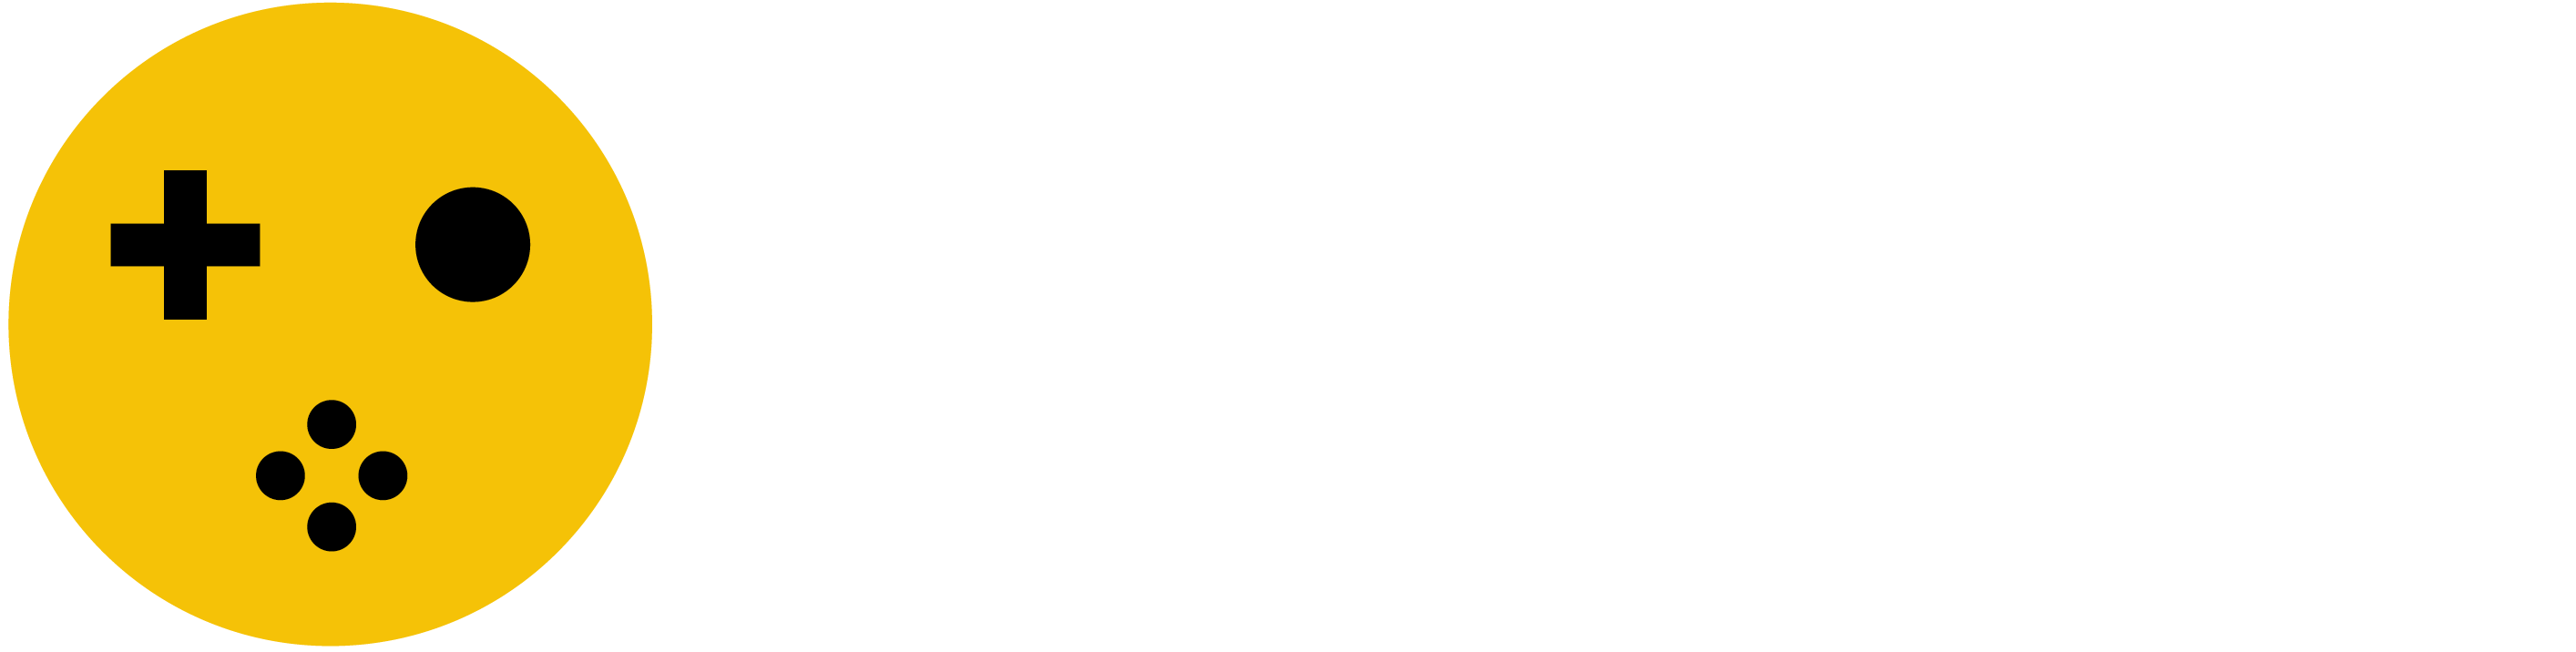 Game Tester Logo